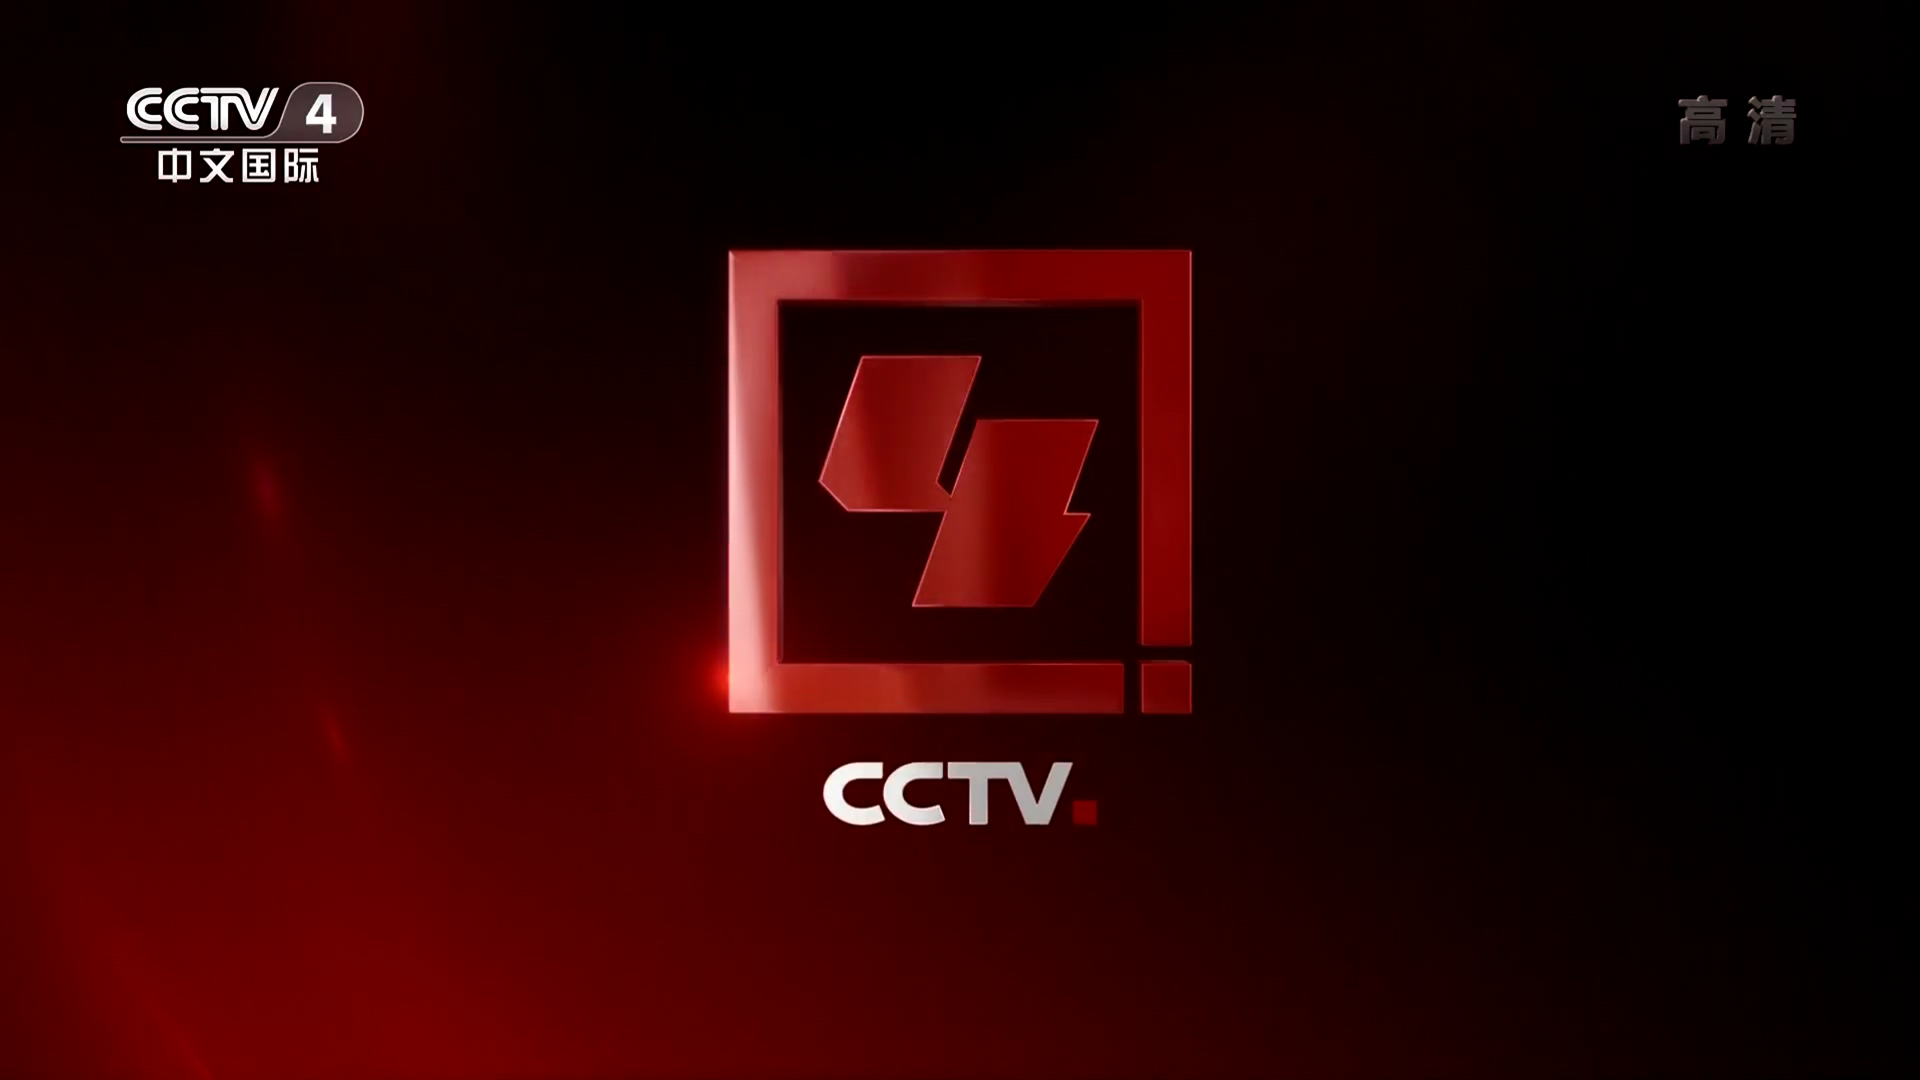 中央電視台中文國際頻道(cctv4)